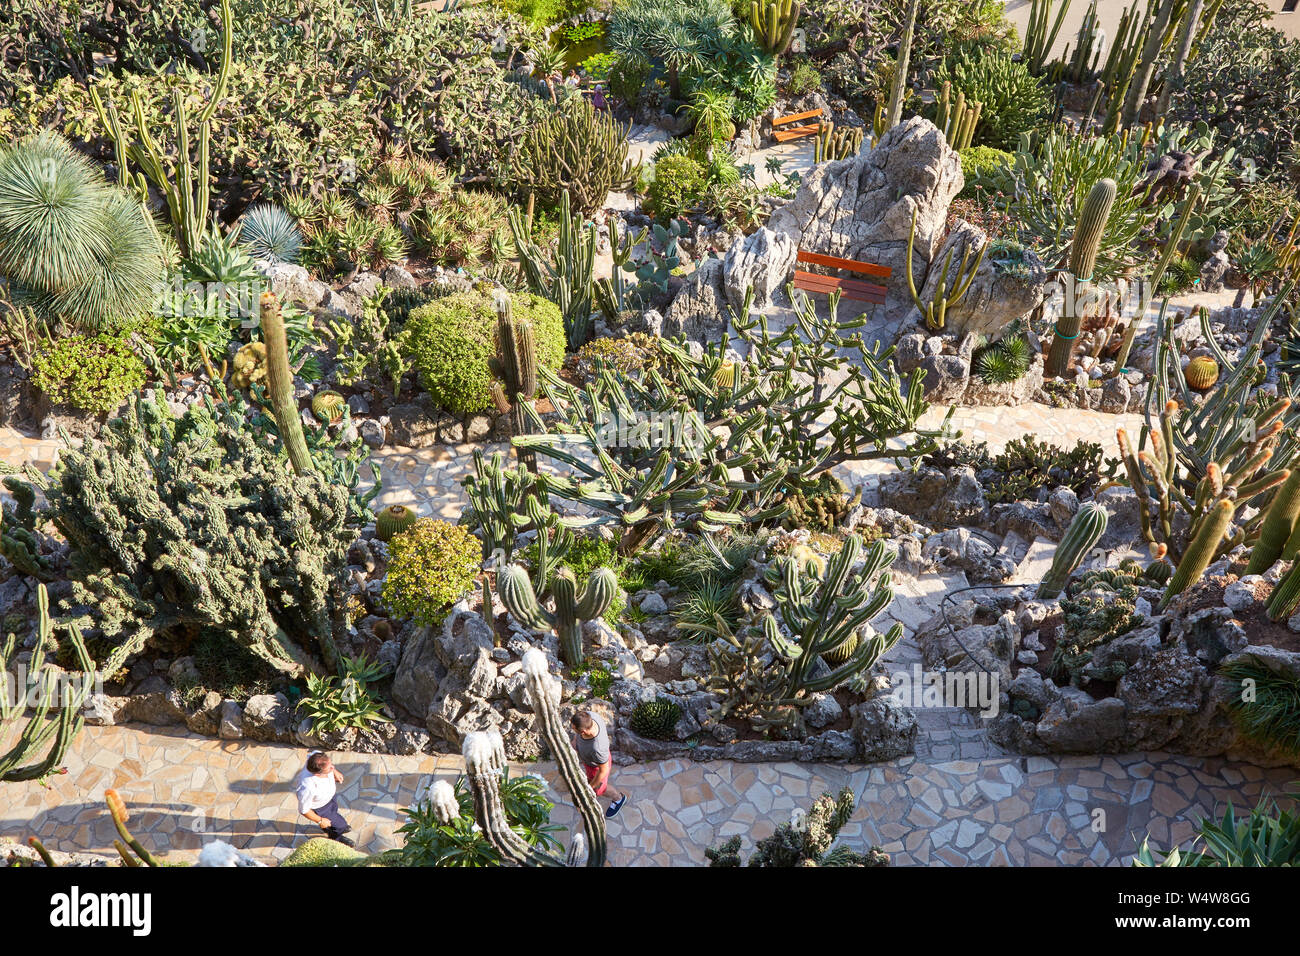 MONTE CARLO, MONACO - le 20 août 2016 : Le chemin de jardin exotique avec de rares plantes succulentes et des personnes dans un jour d'été ensoleillé à Monte Carlo, Monaco. Banque D'Images